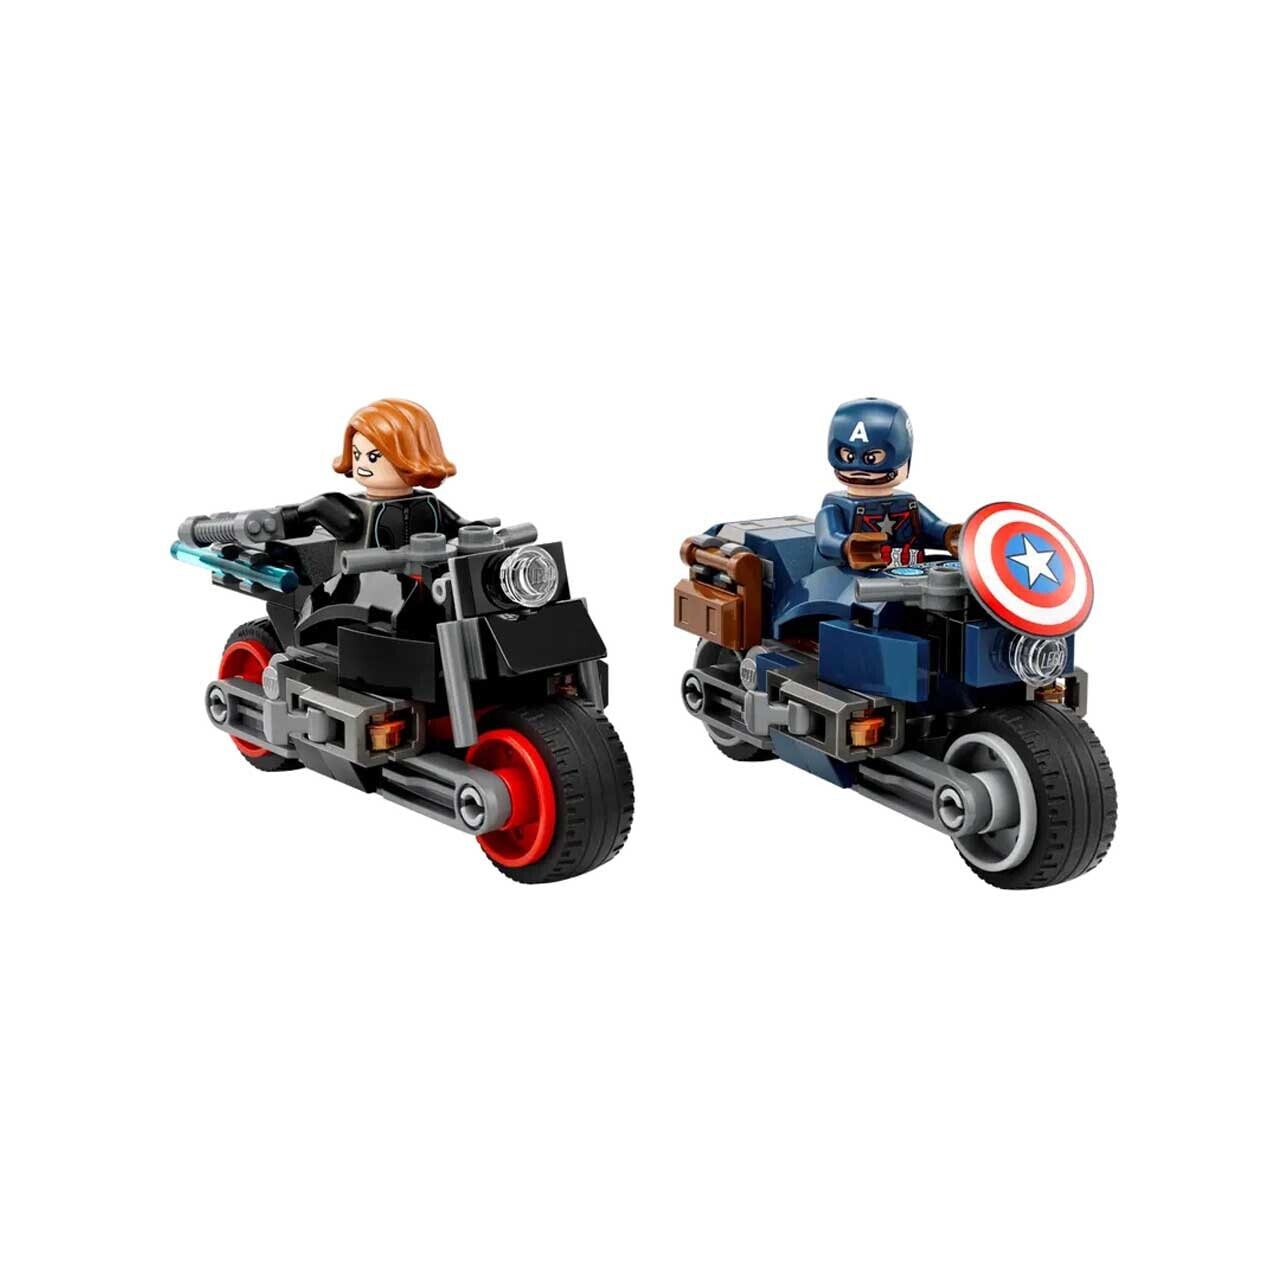 Конструктор LEGO Marvel Super Heroes Черная вдова и Капитан Америка, 130 деталей, 76260 конструктор lego marvel sanctum sanctorum 2708 деталей